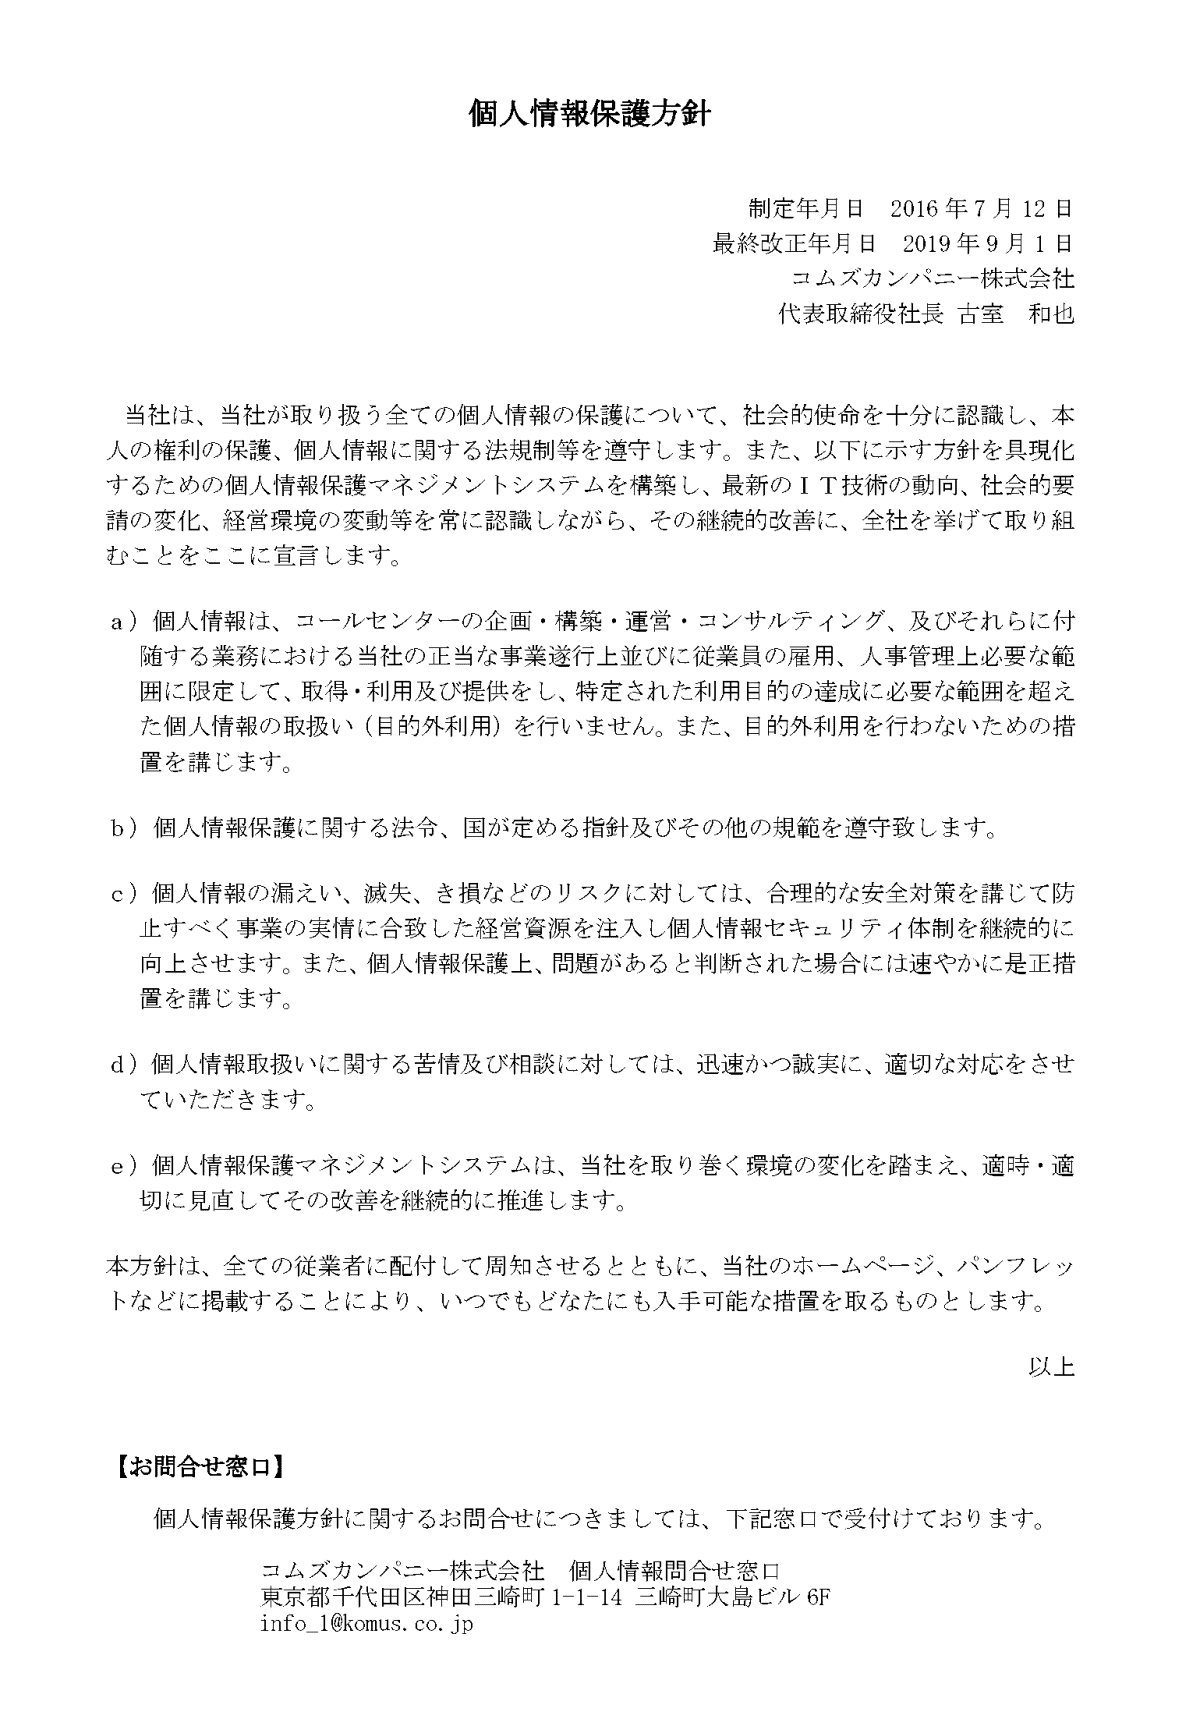 PA00個人情報保護方針_20190901改定.gif